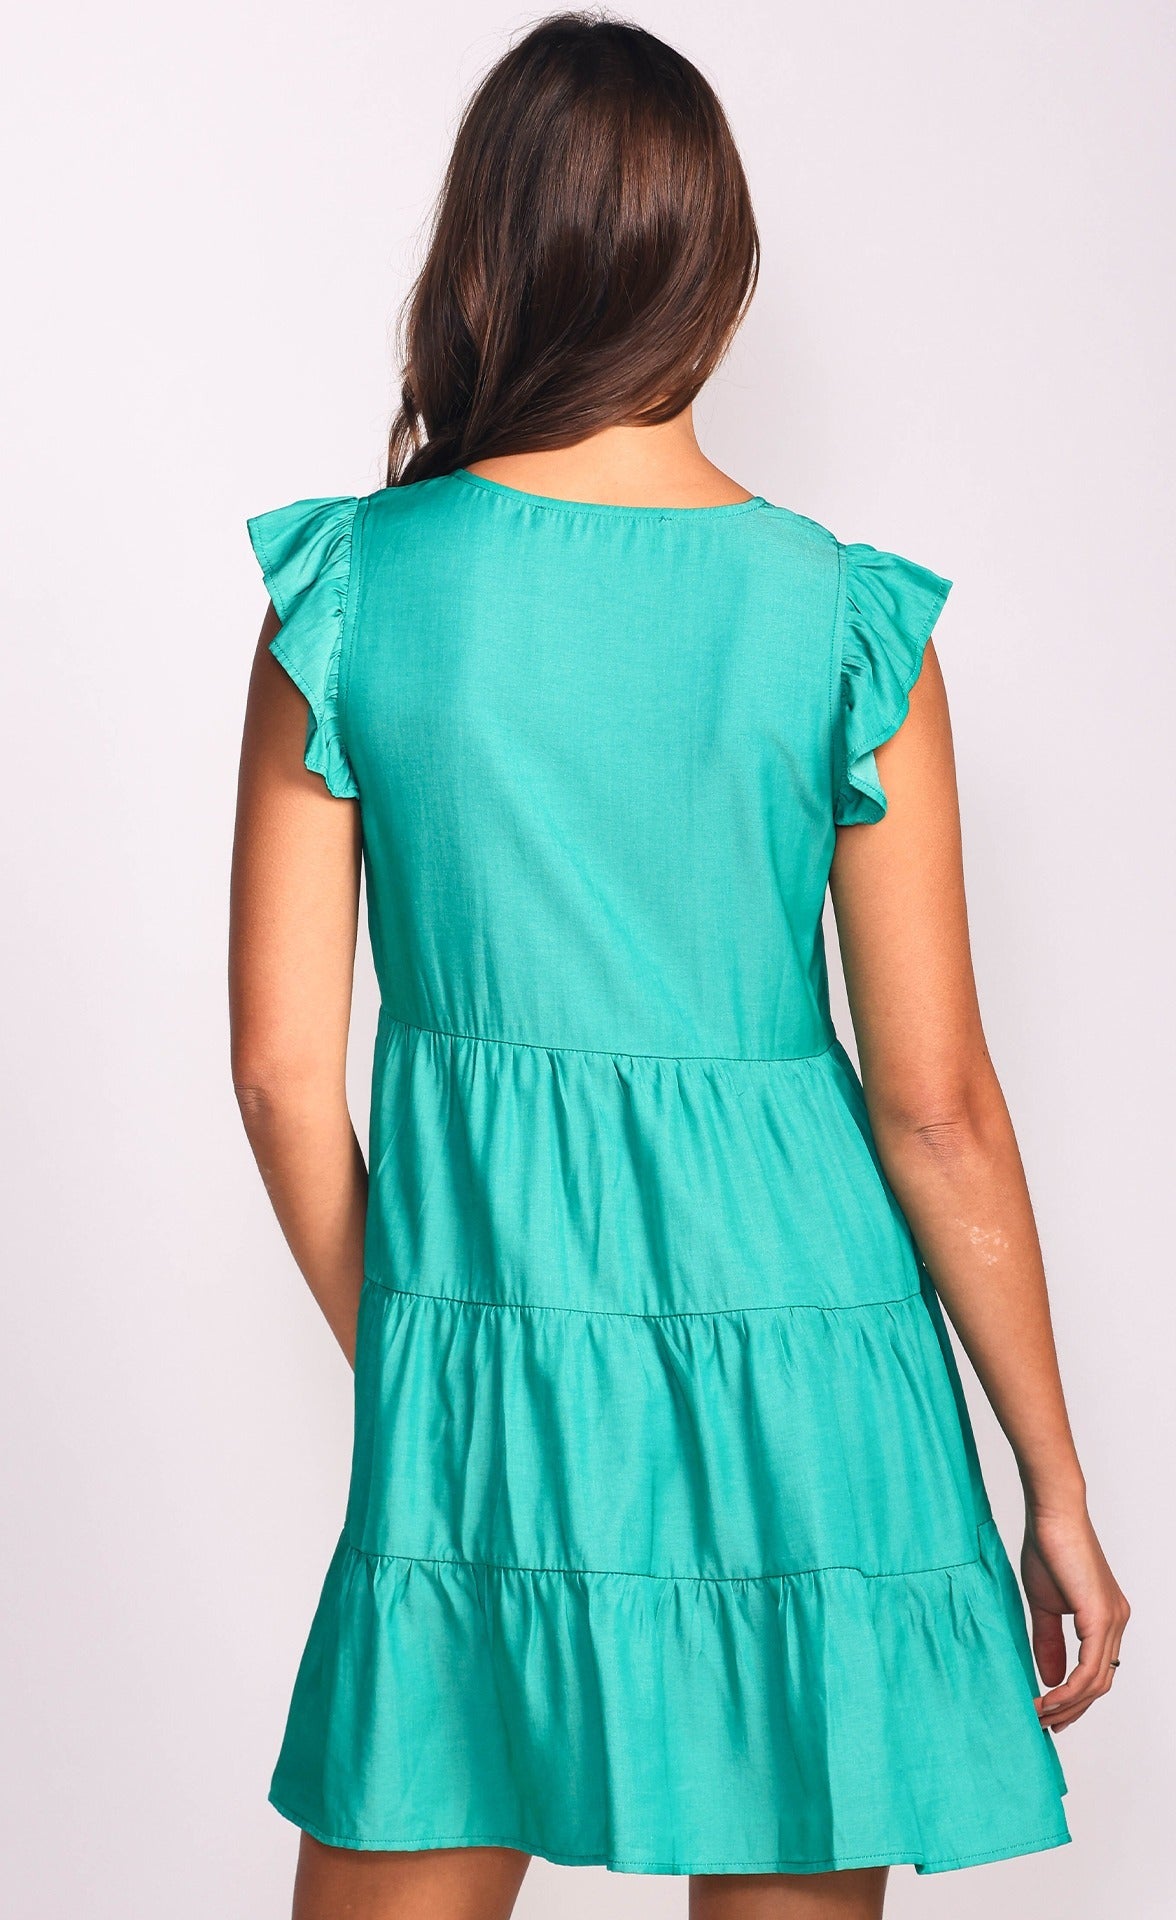 Une robe Portée par une femme brune, de couleur verte, sans manches qui montre les détails arrière de la robe.